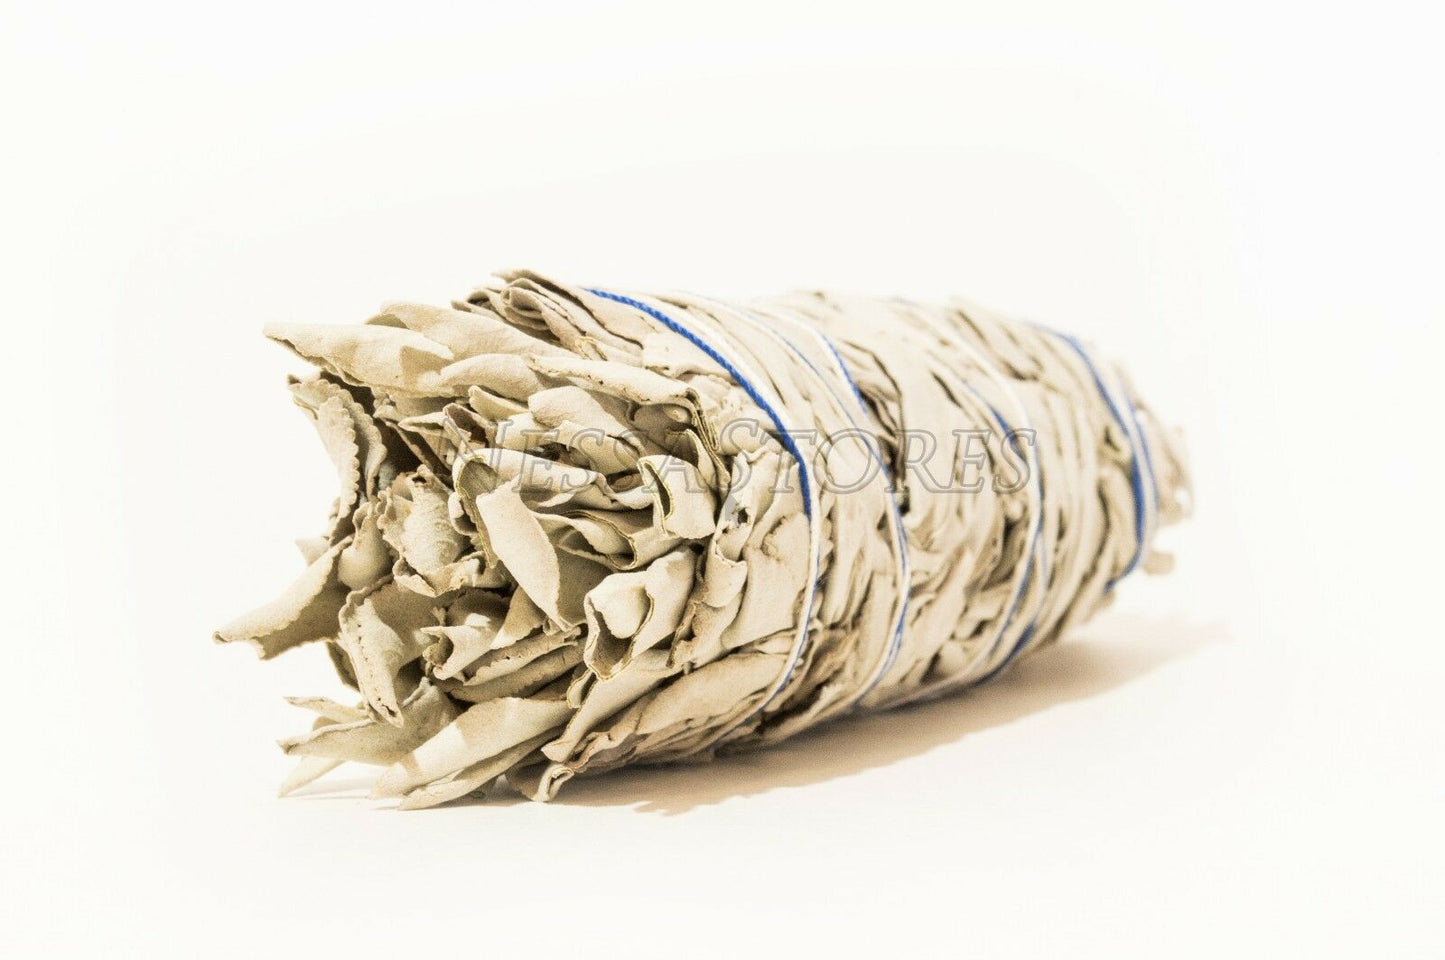 NessaStores California White Sage Smudge Incense 7"-8" Bundle (7 pcs) #JC-009